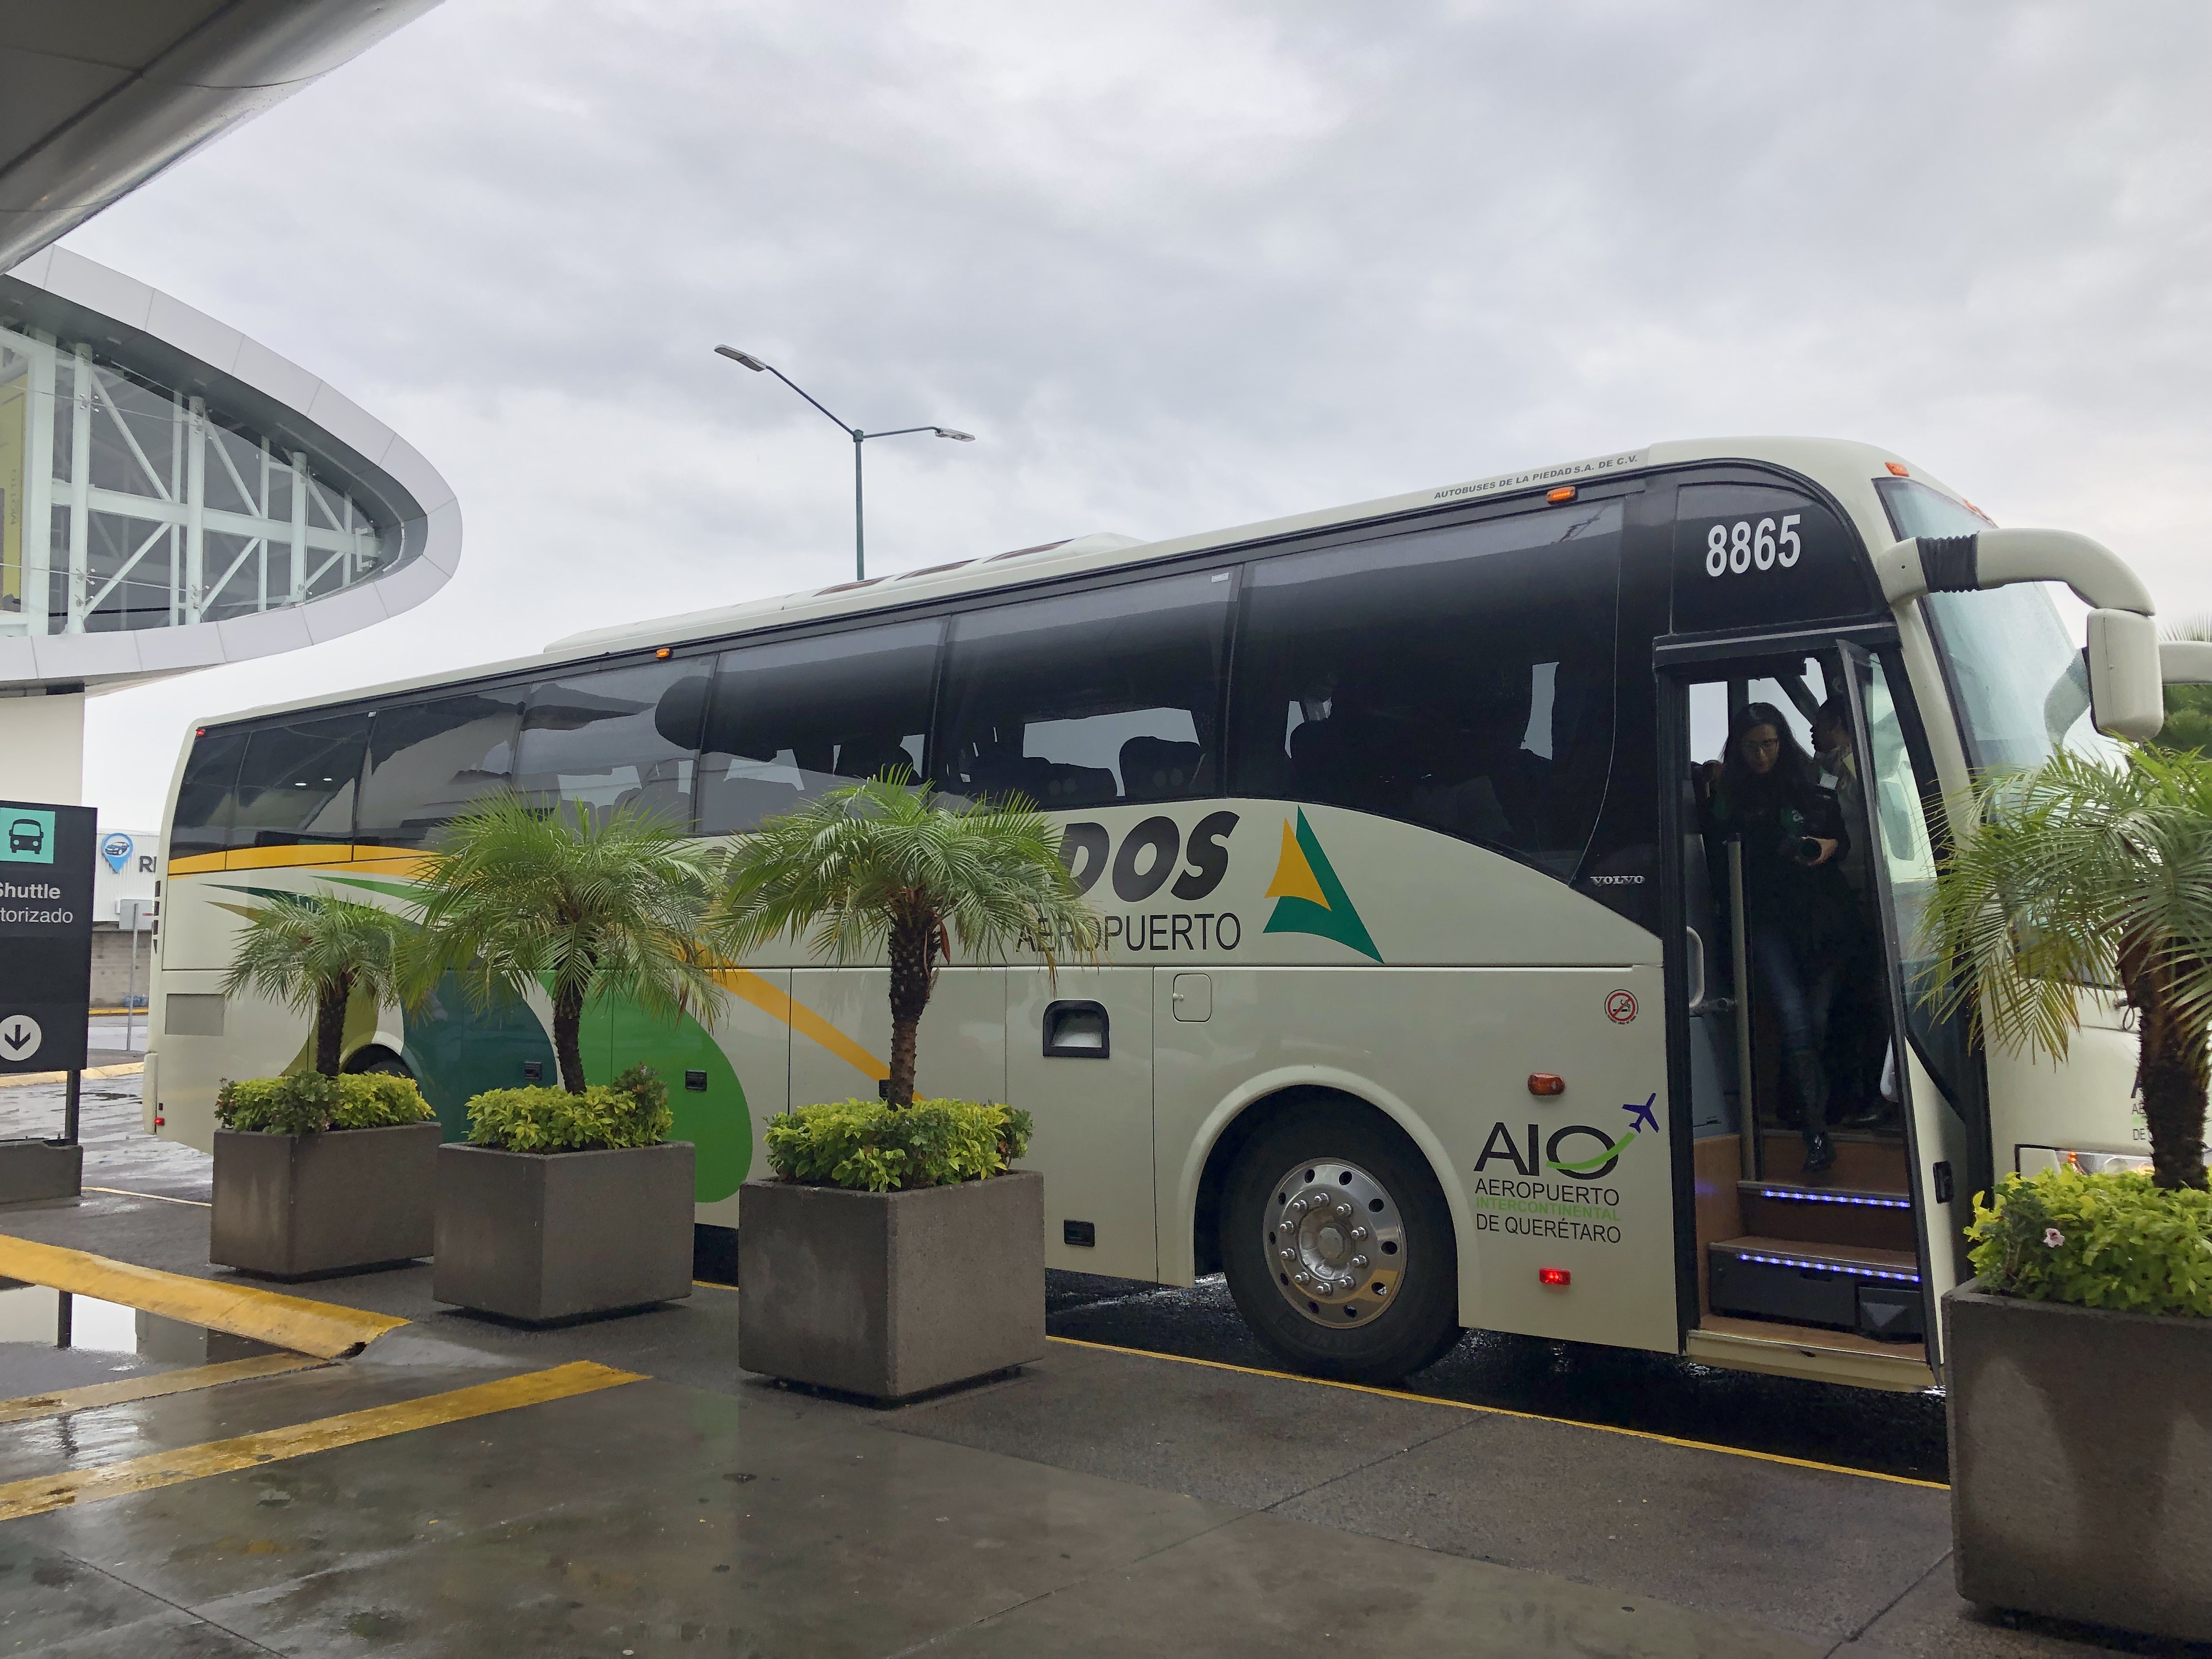  Inaugura Sedesu terminal de autobuses del AIQ